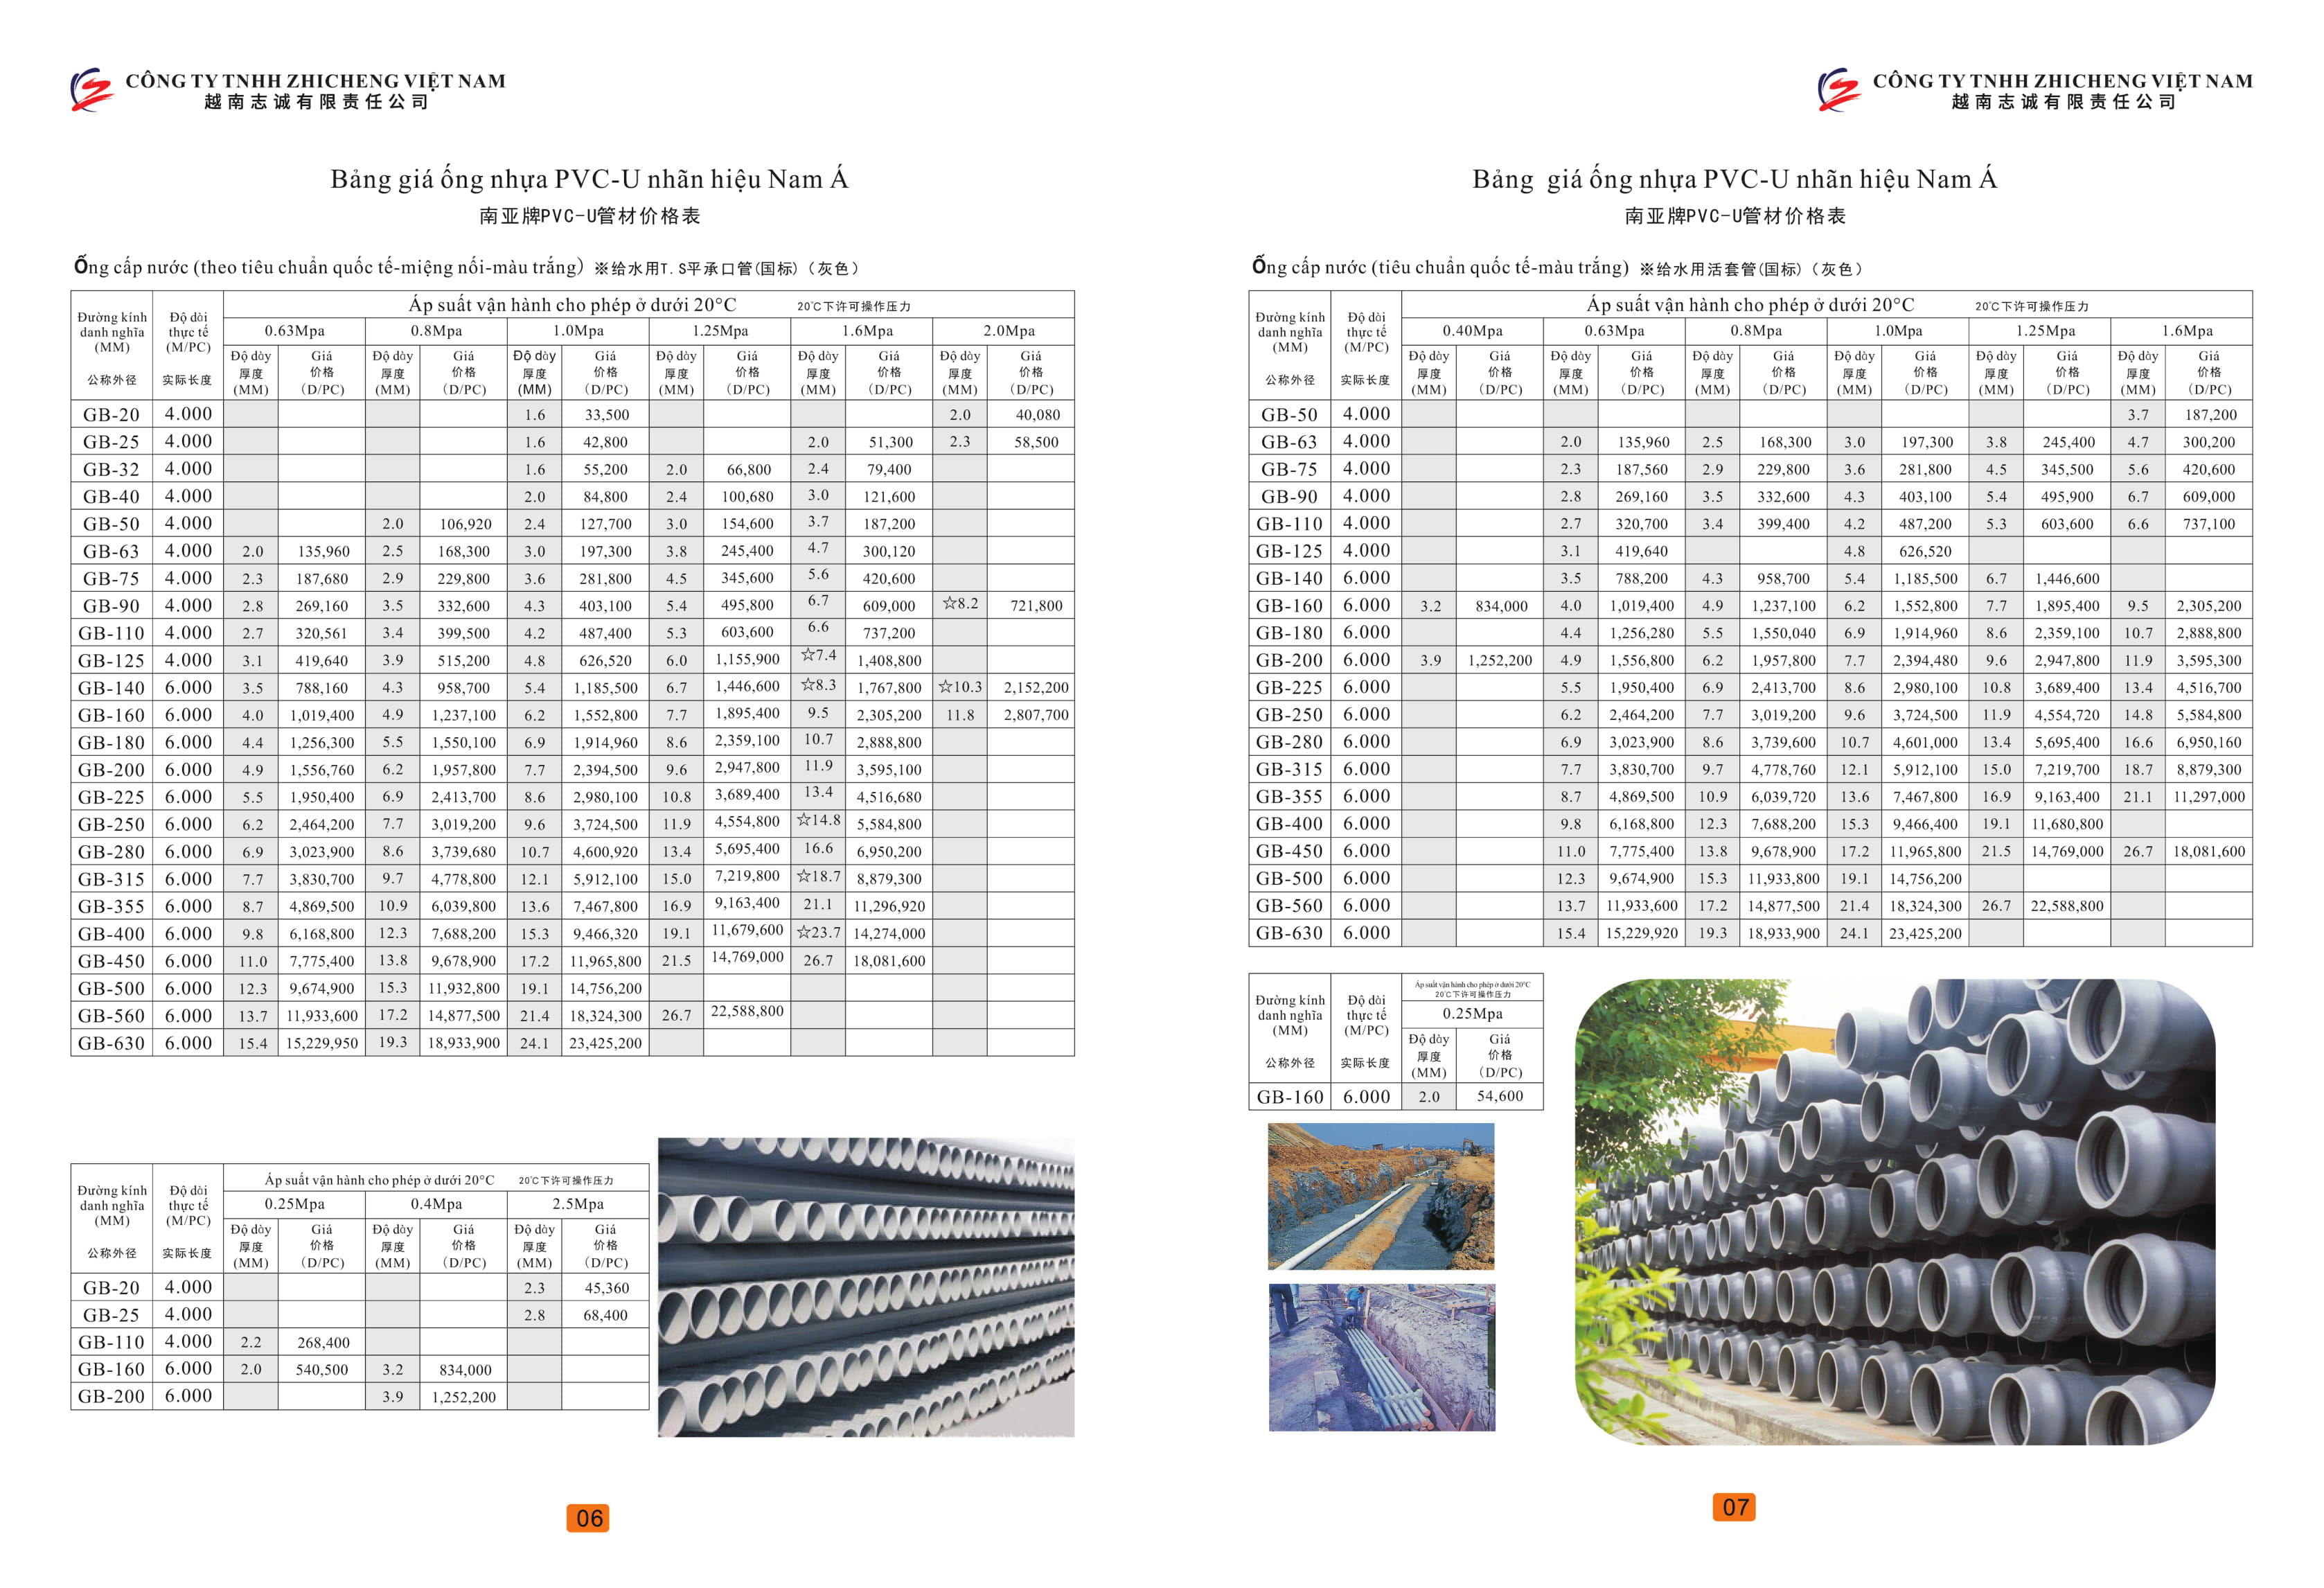 Bảng giá ống nước và phụ kiện đường ống nhãn hiệu Nam Á